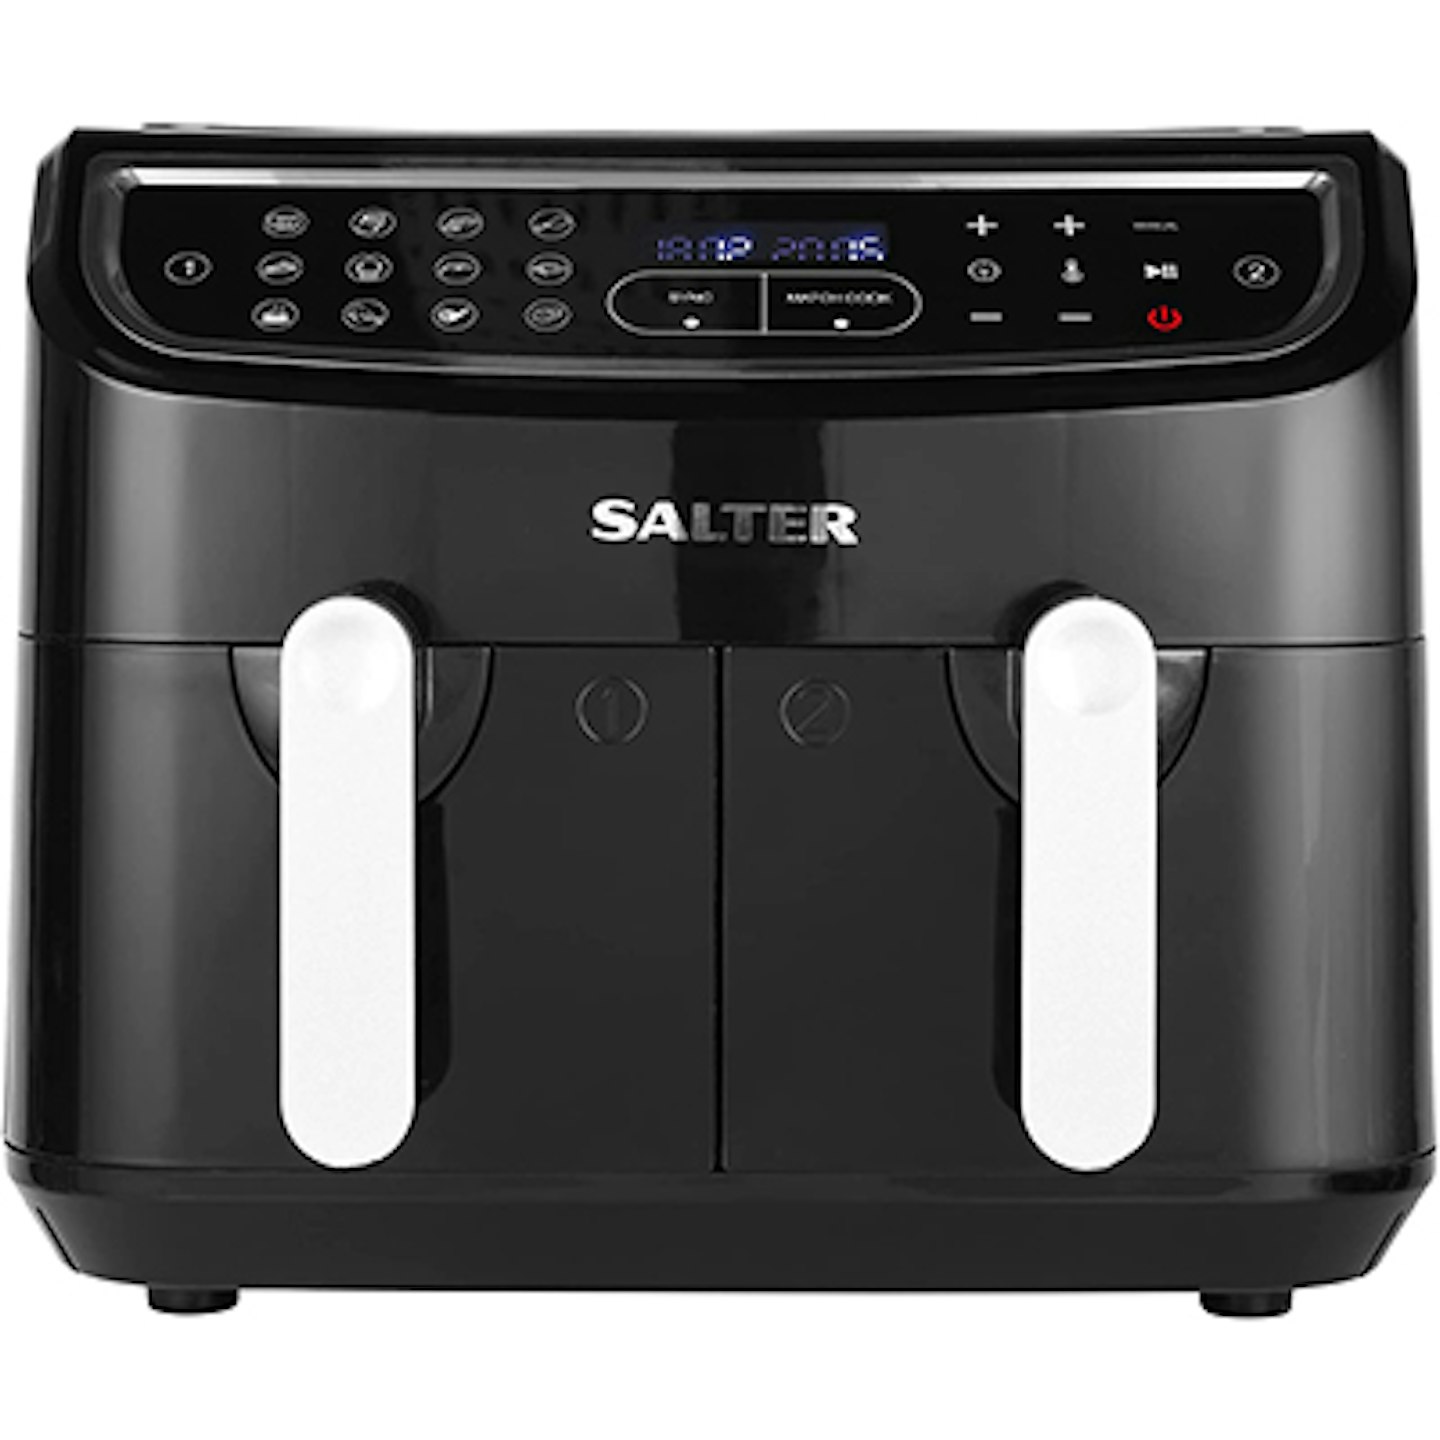 Salter EK4548 Dual Air Fryer